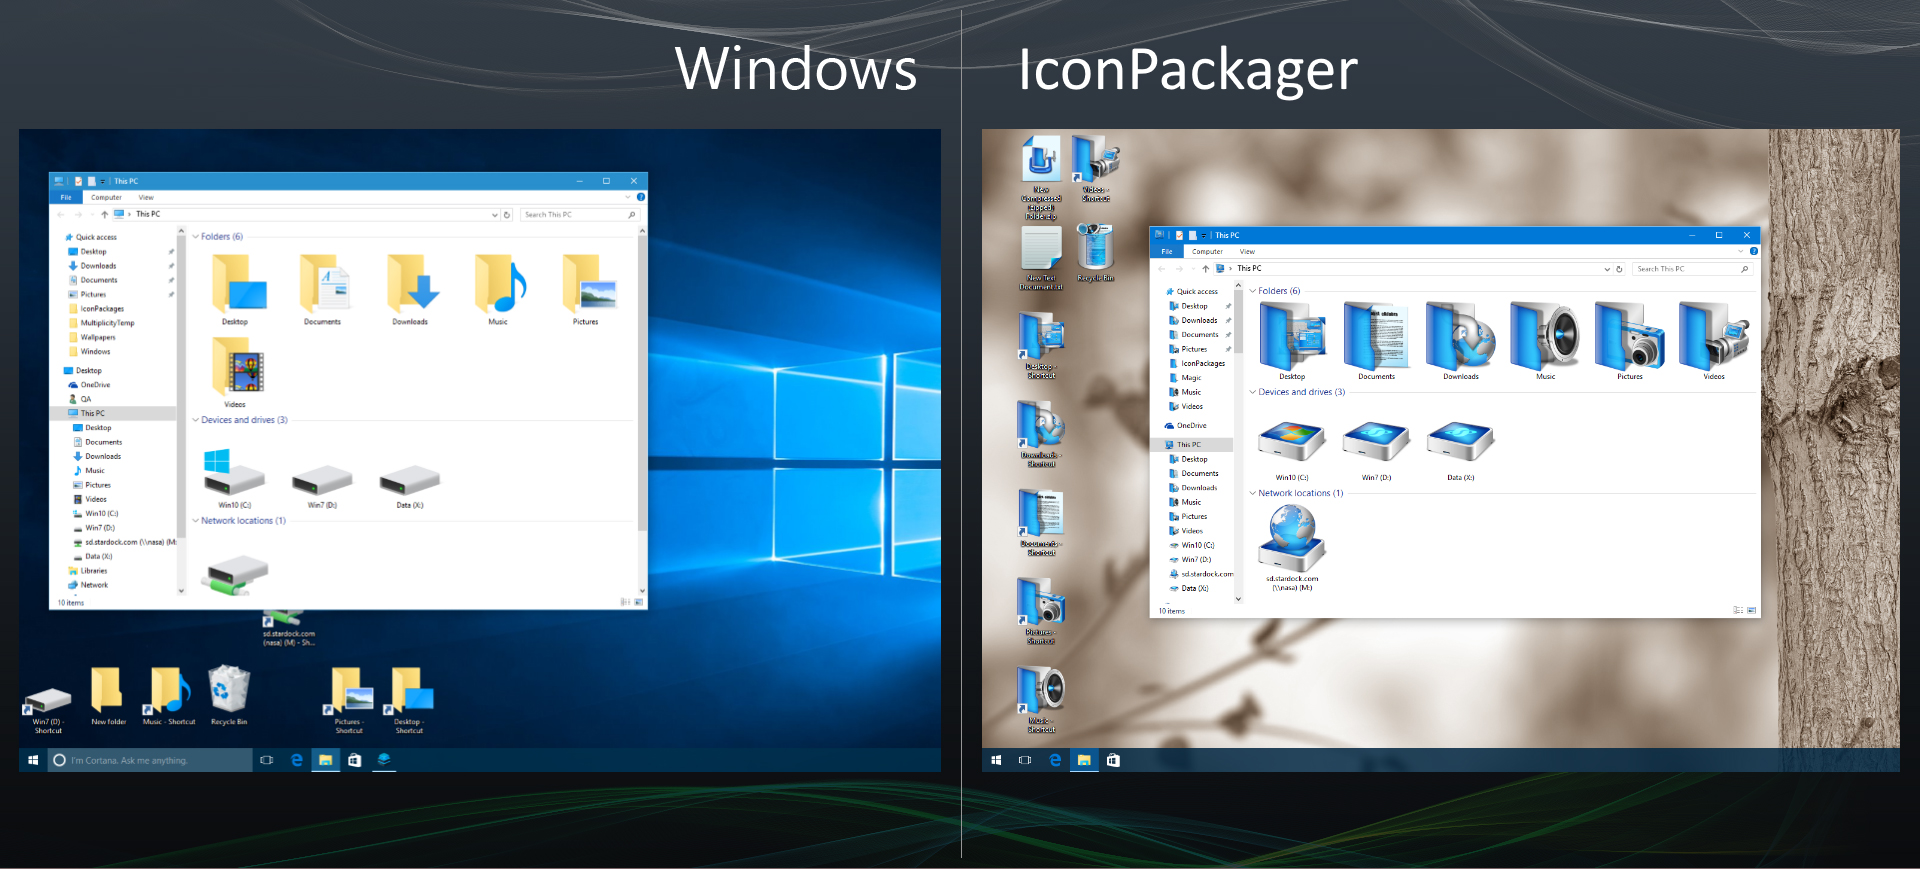 Сменить значки windows 10. ICONPACKAGER Windows 10. Иконки для ICONPACKAGER. Иконки для плиток Windows 10. Как поменять иконки в Windows.